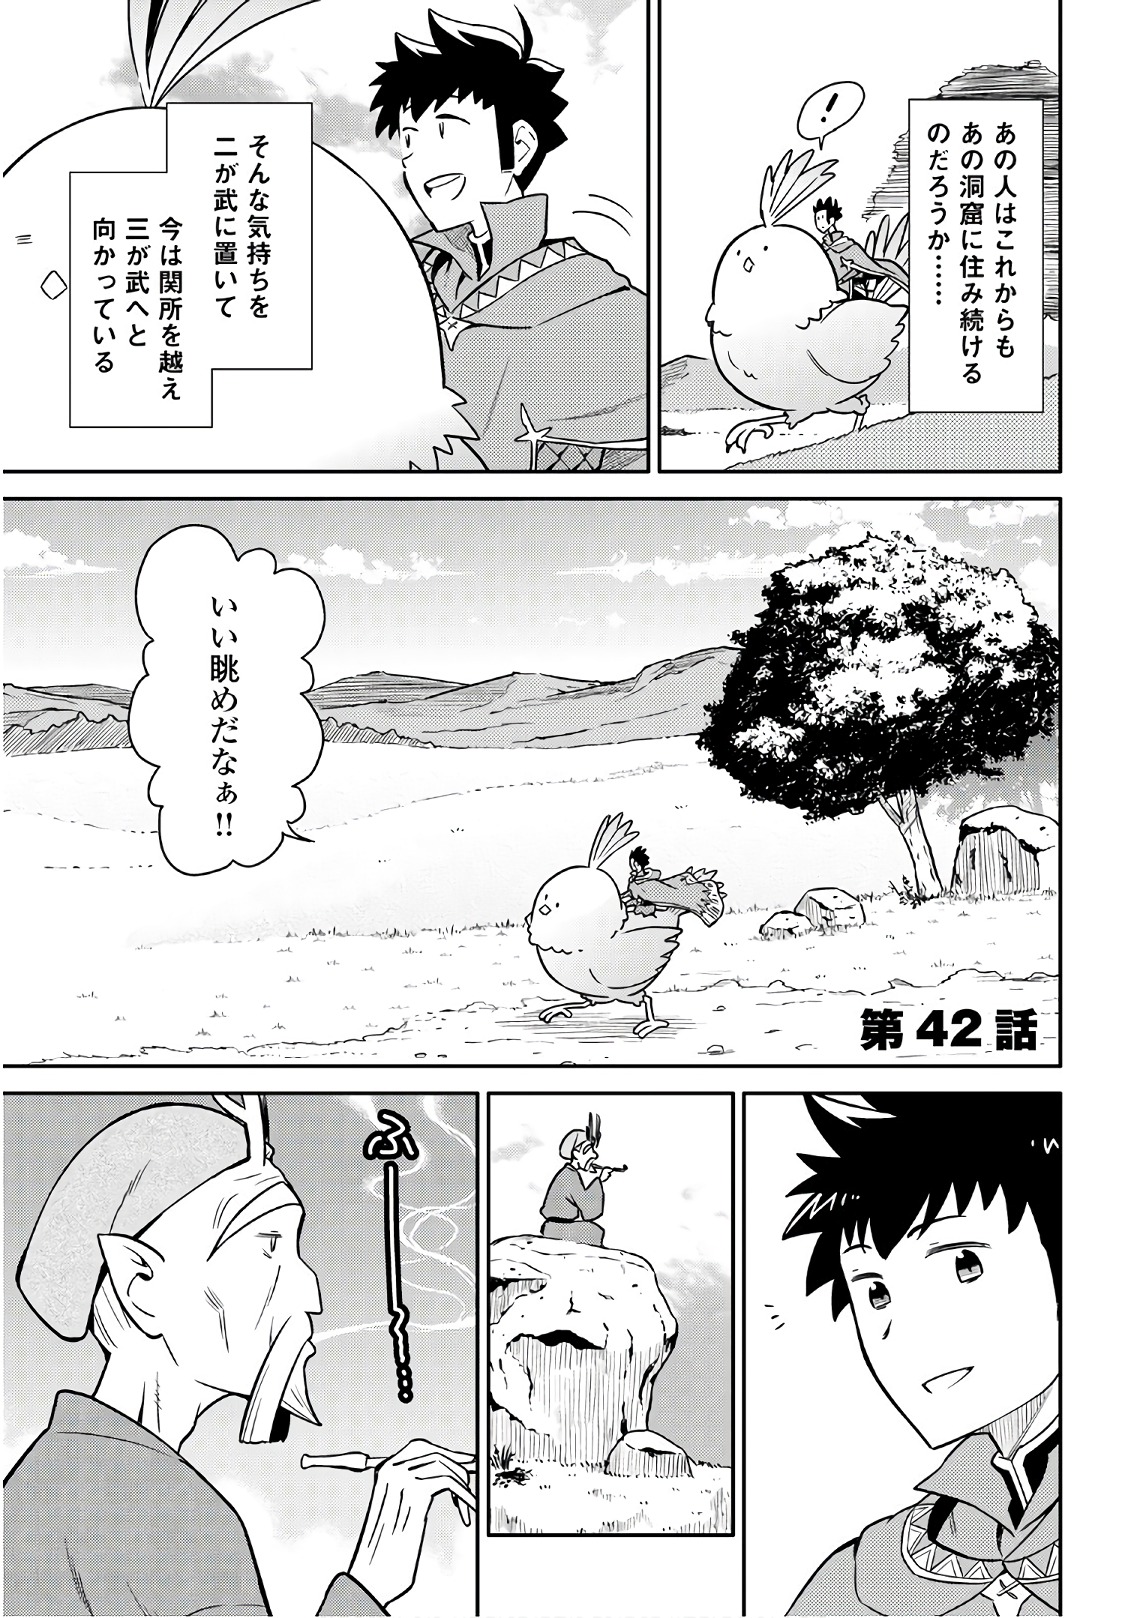 Toaru Ossan no VRMMO Katsudouki - Chapter 42 - Page 1